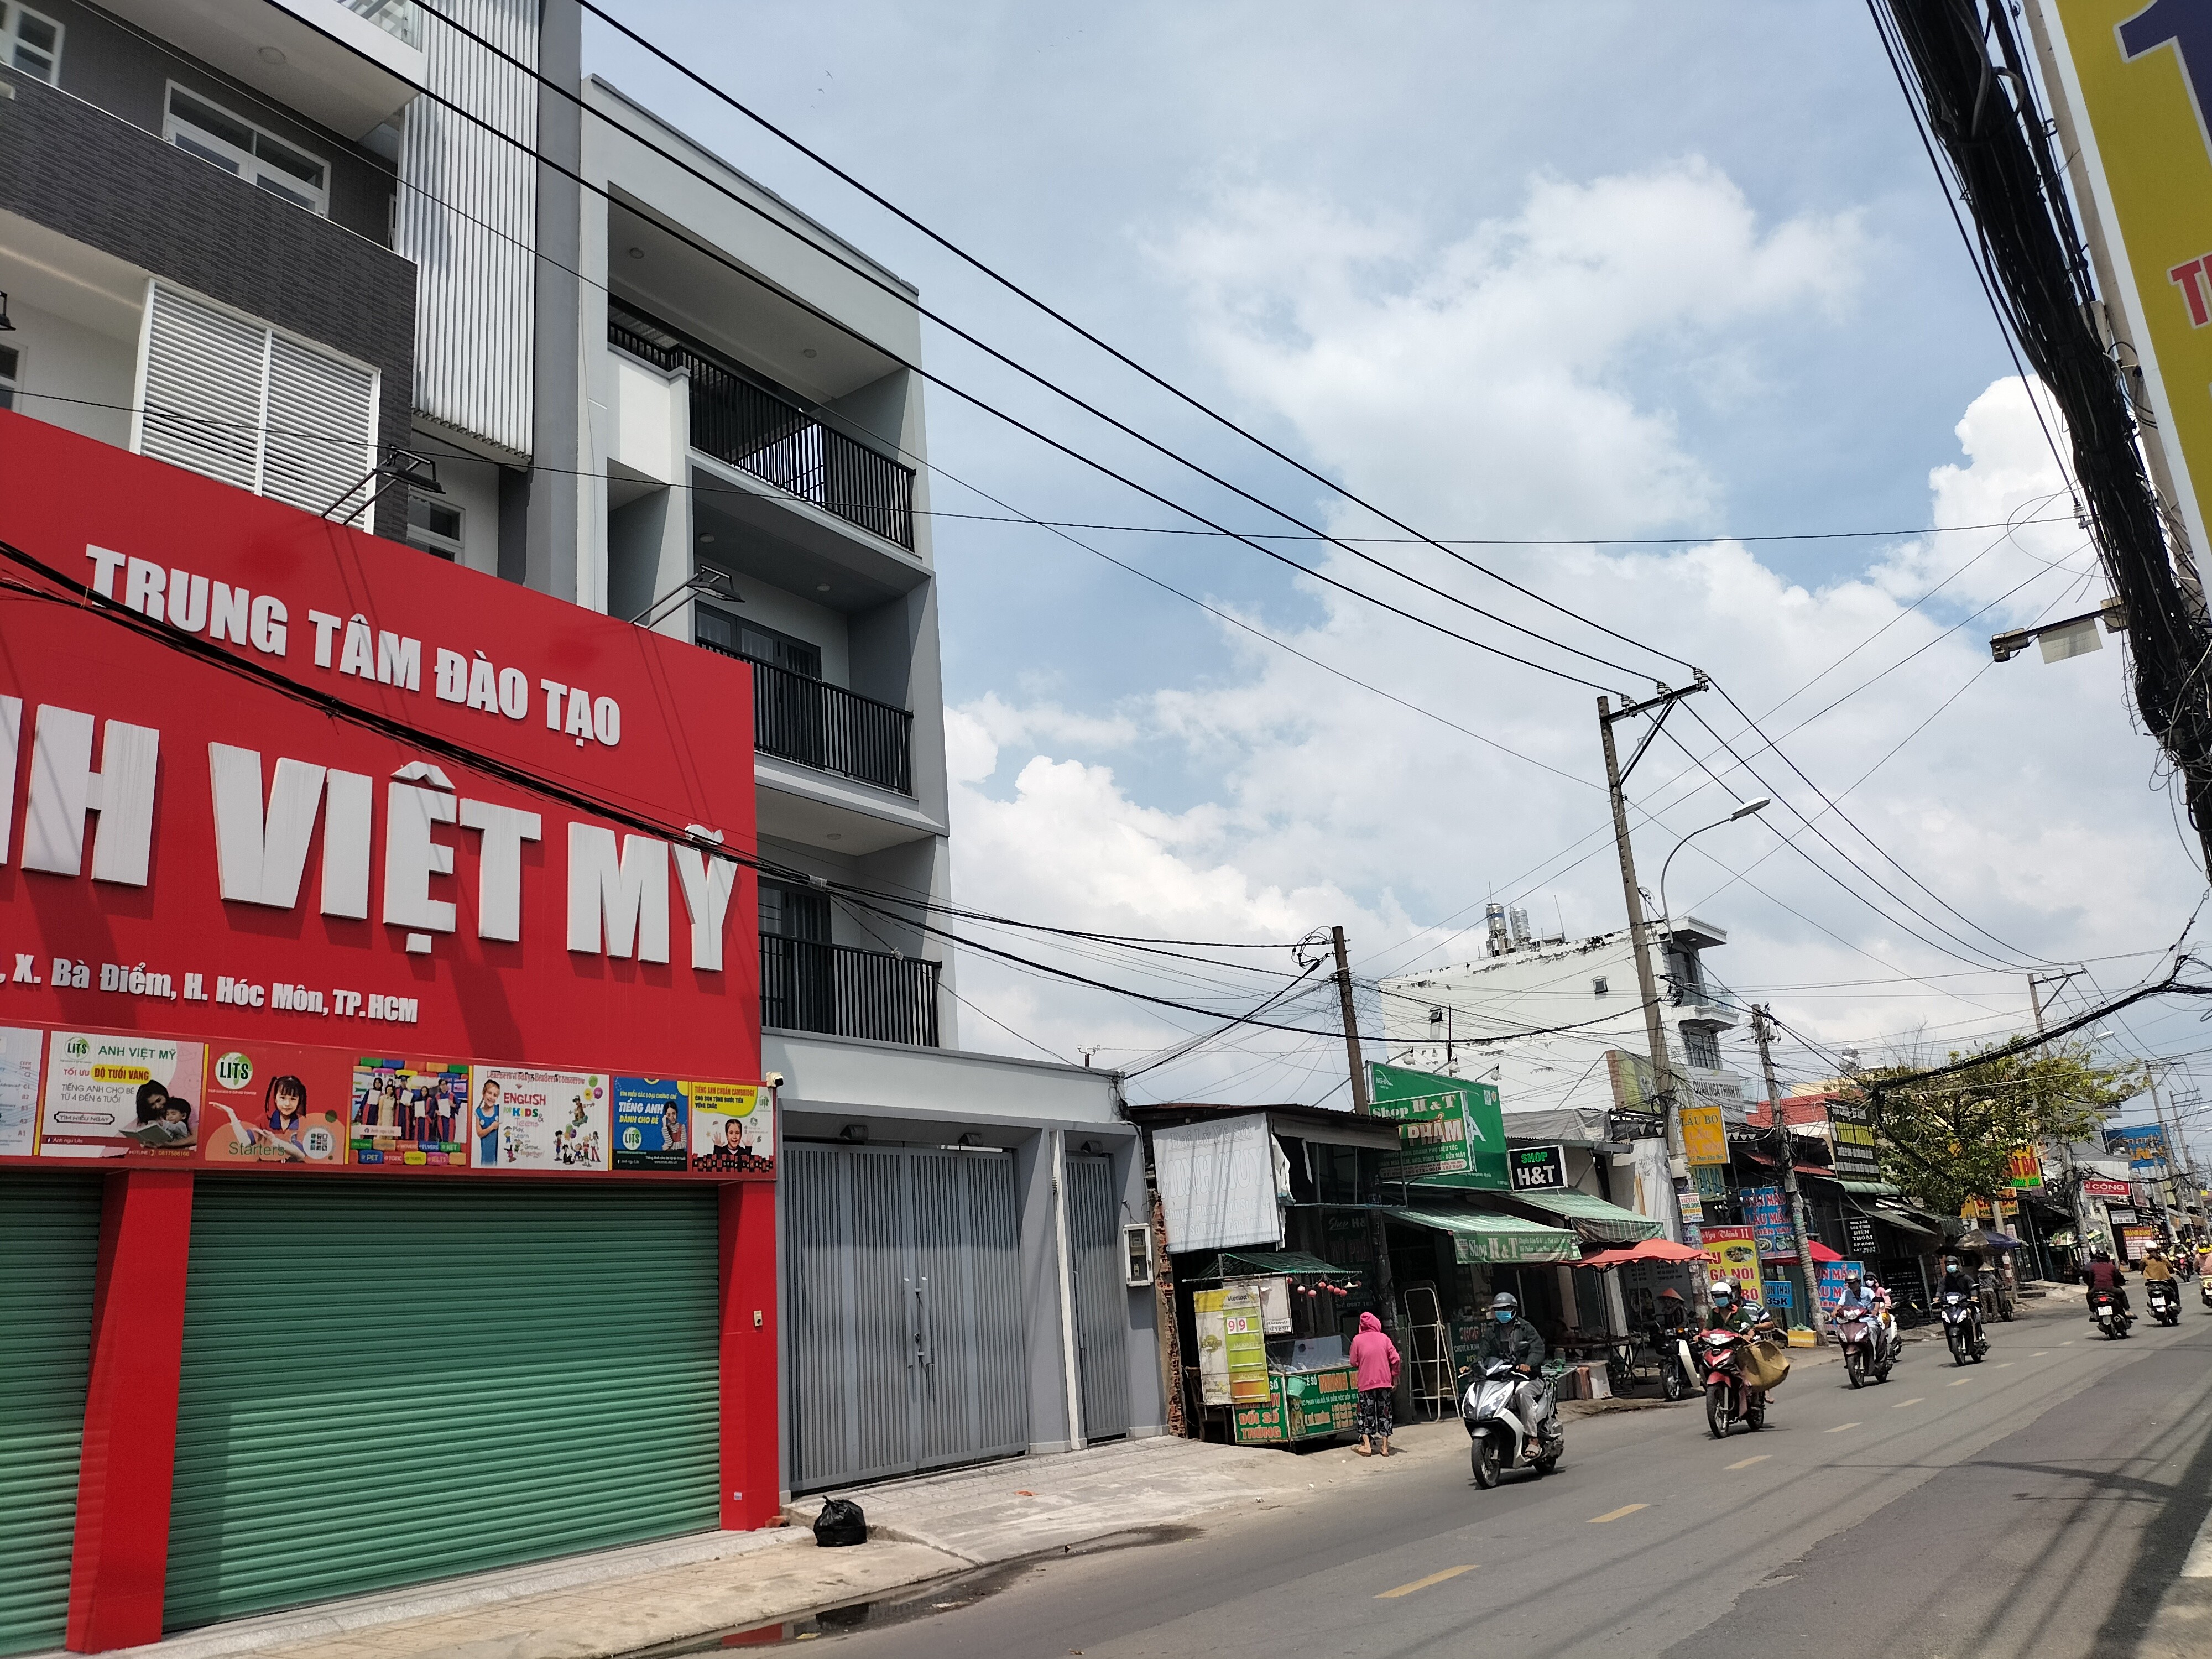 Bán nhà mặt tiền Phan Văn Đối, đường đẹp nhộn nhịp kinh doanh đa ngành nghề, kết nối quốc lộ 1A từ 3